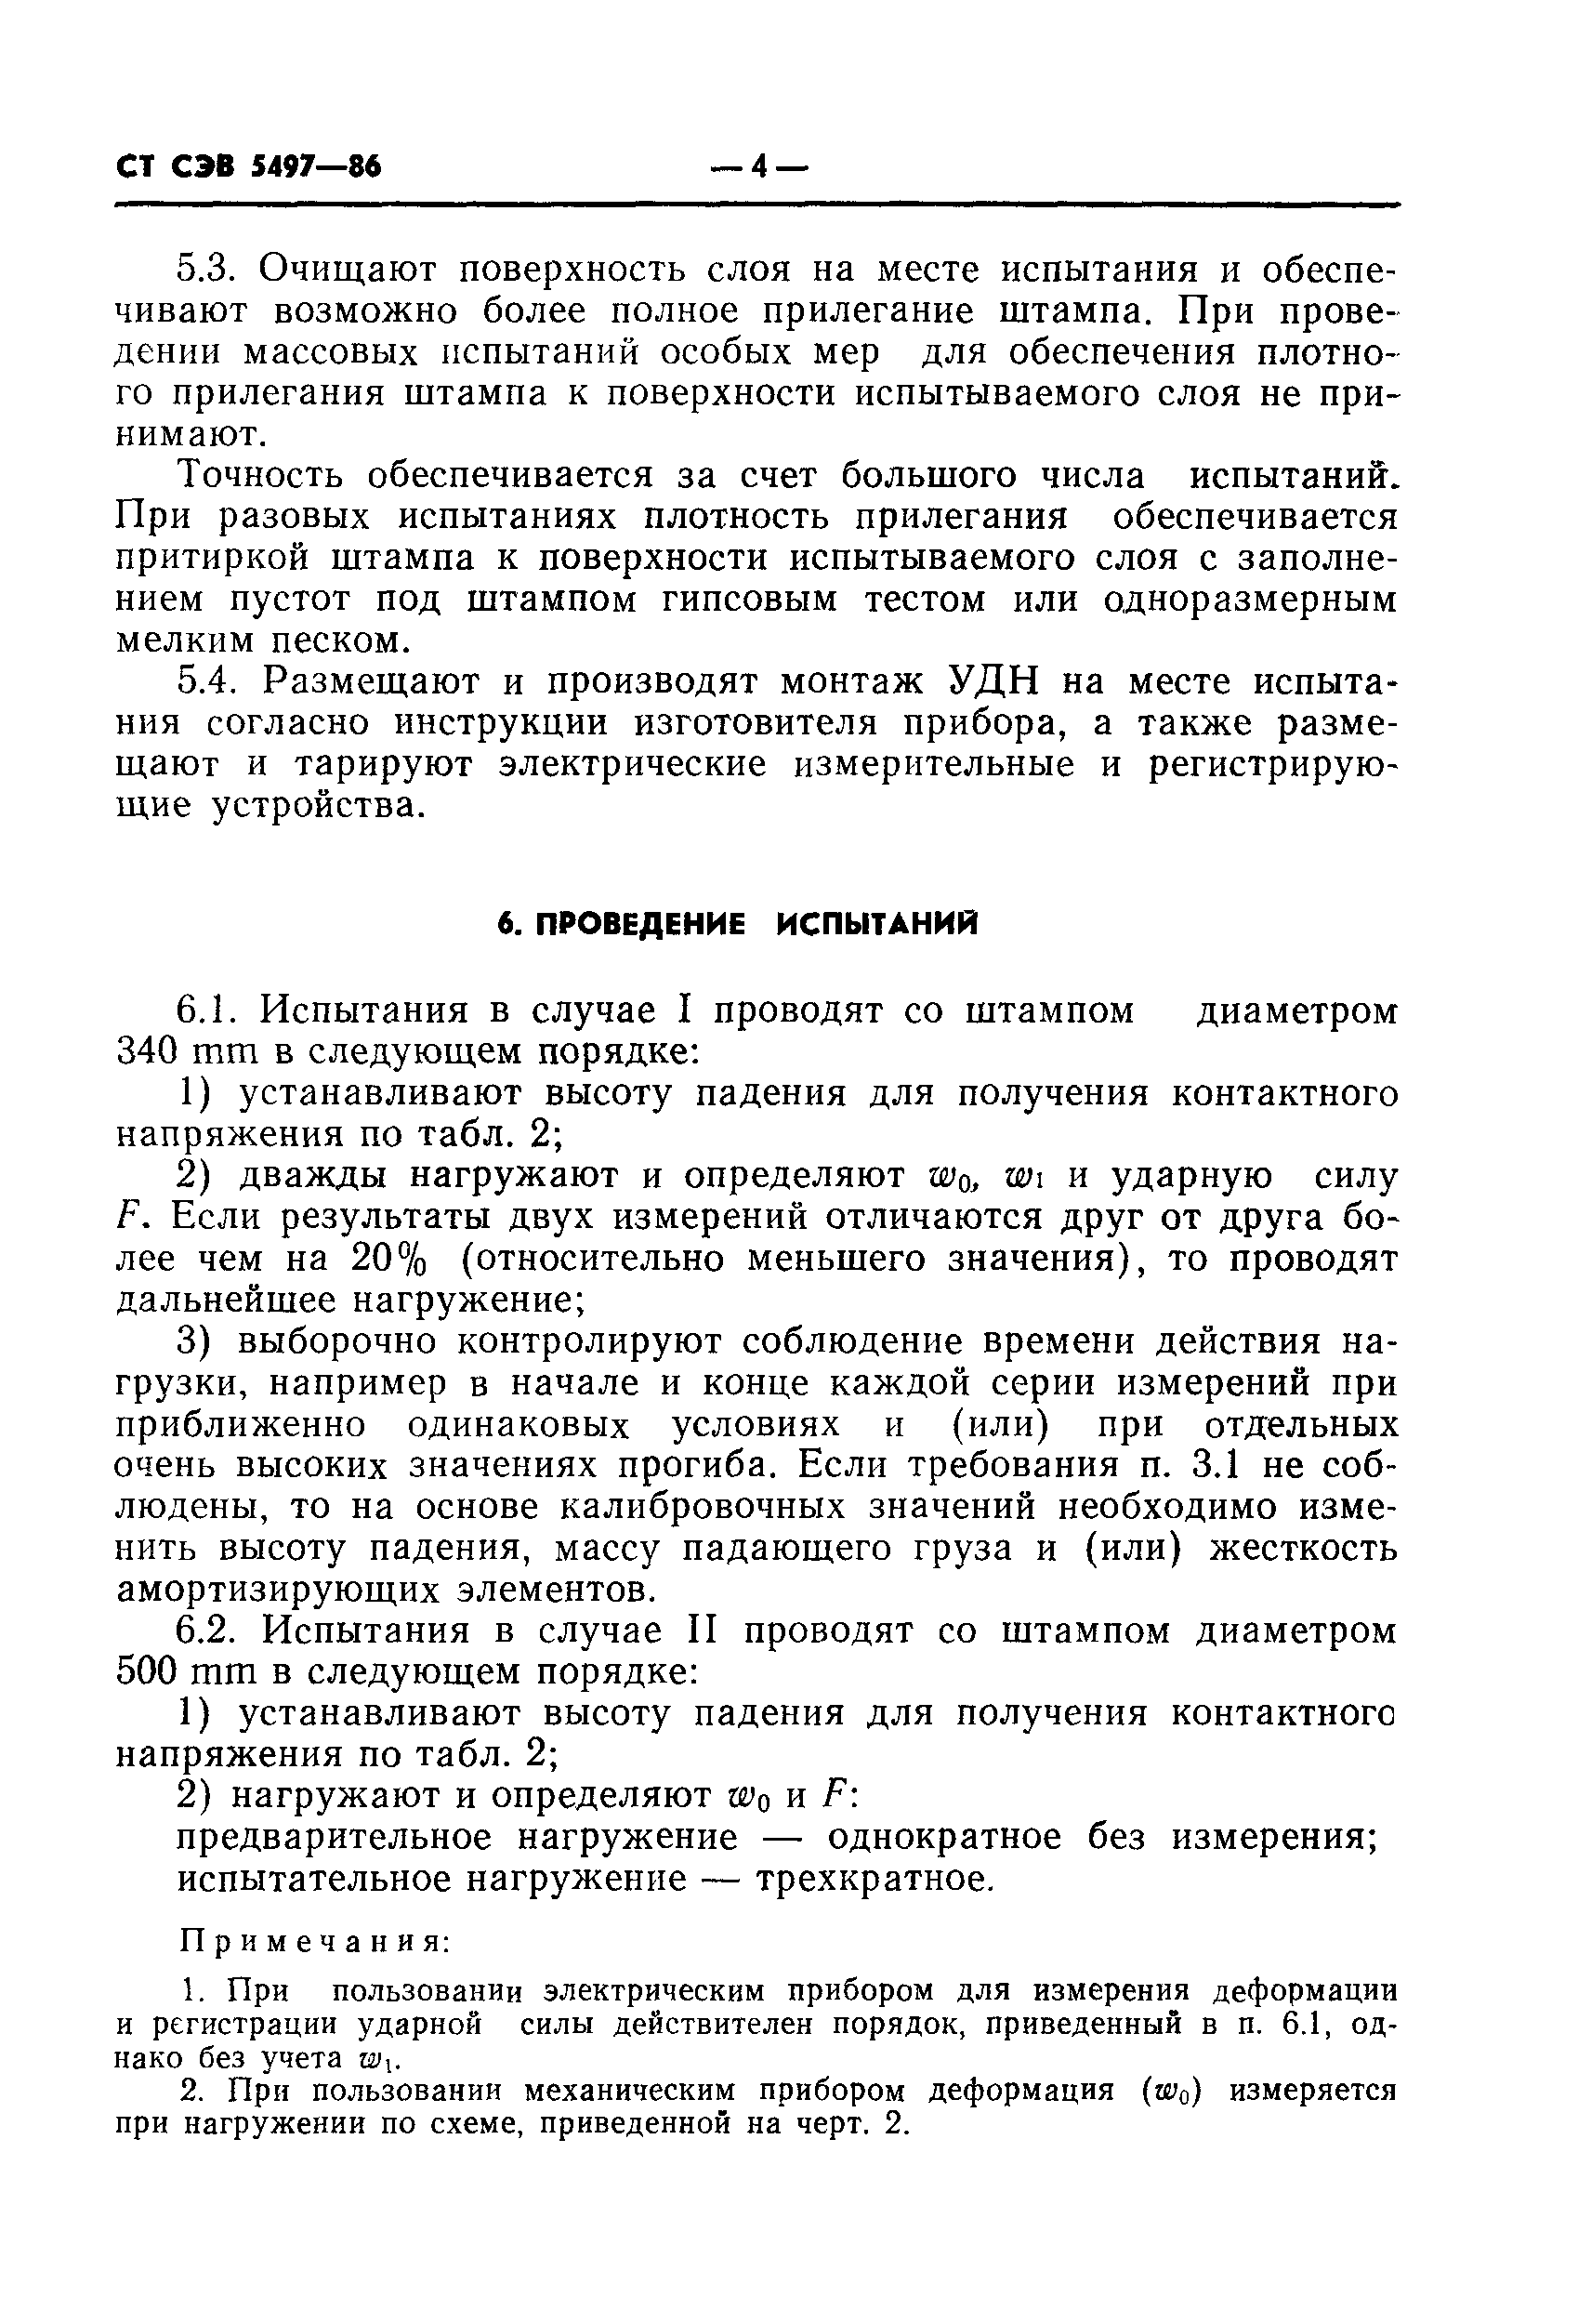 СТ СЭВ 5497-86